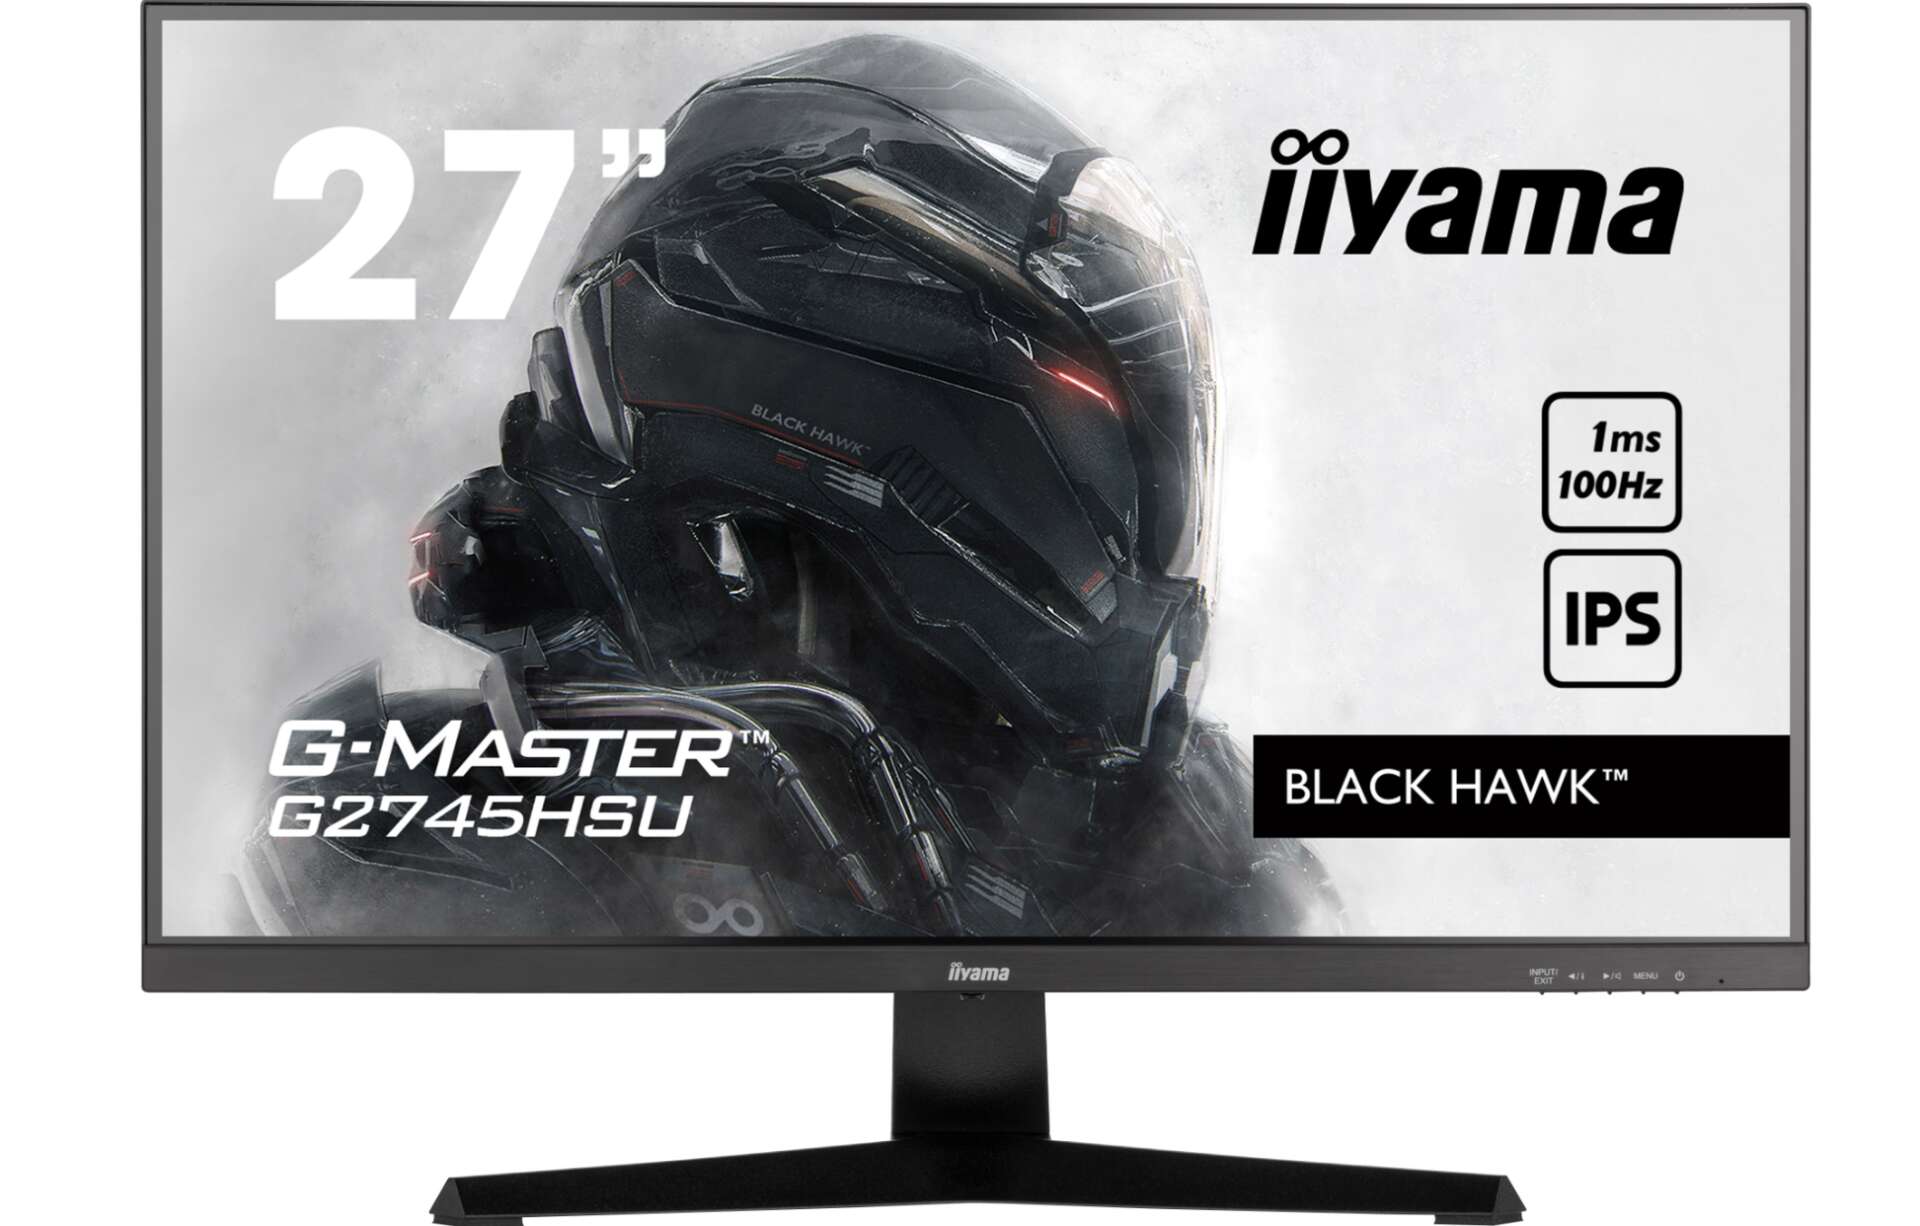 Iiyama g-master g2745hsu-b1 27" monitor